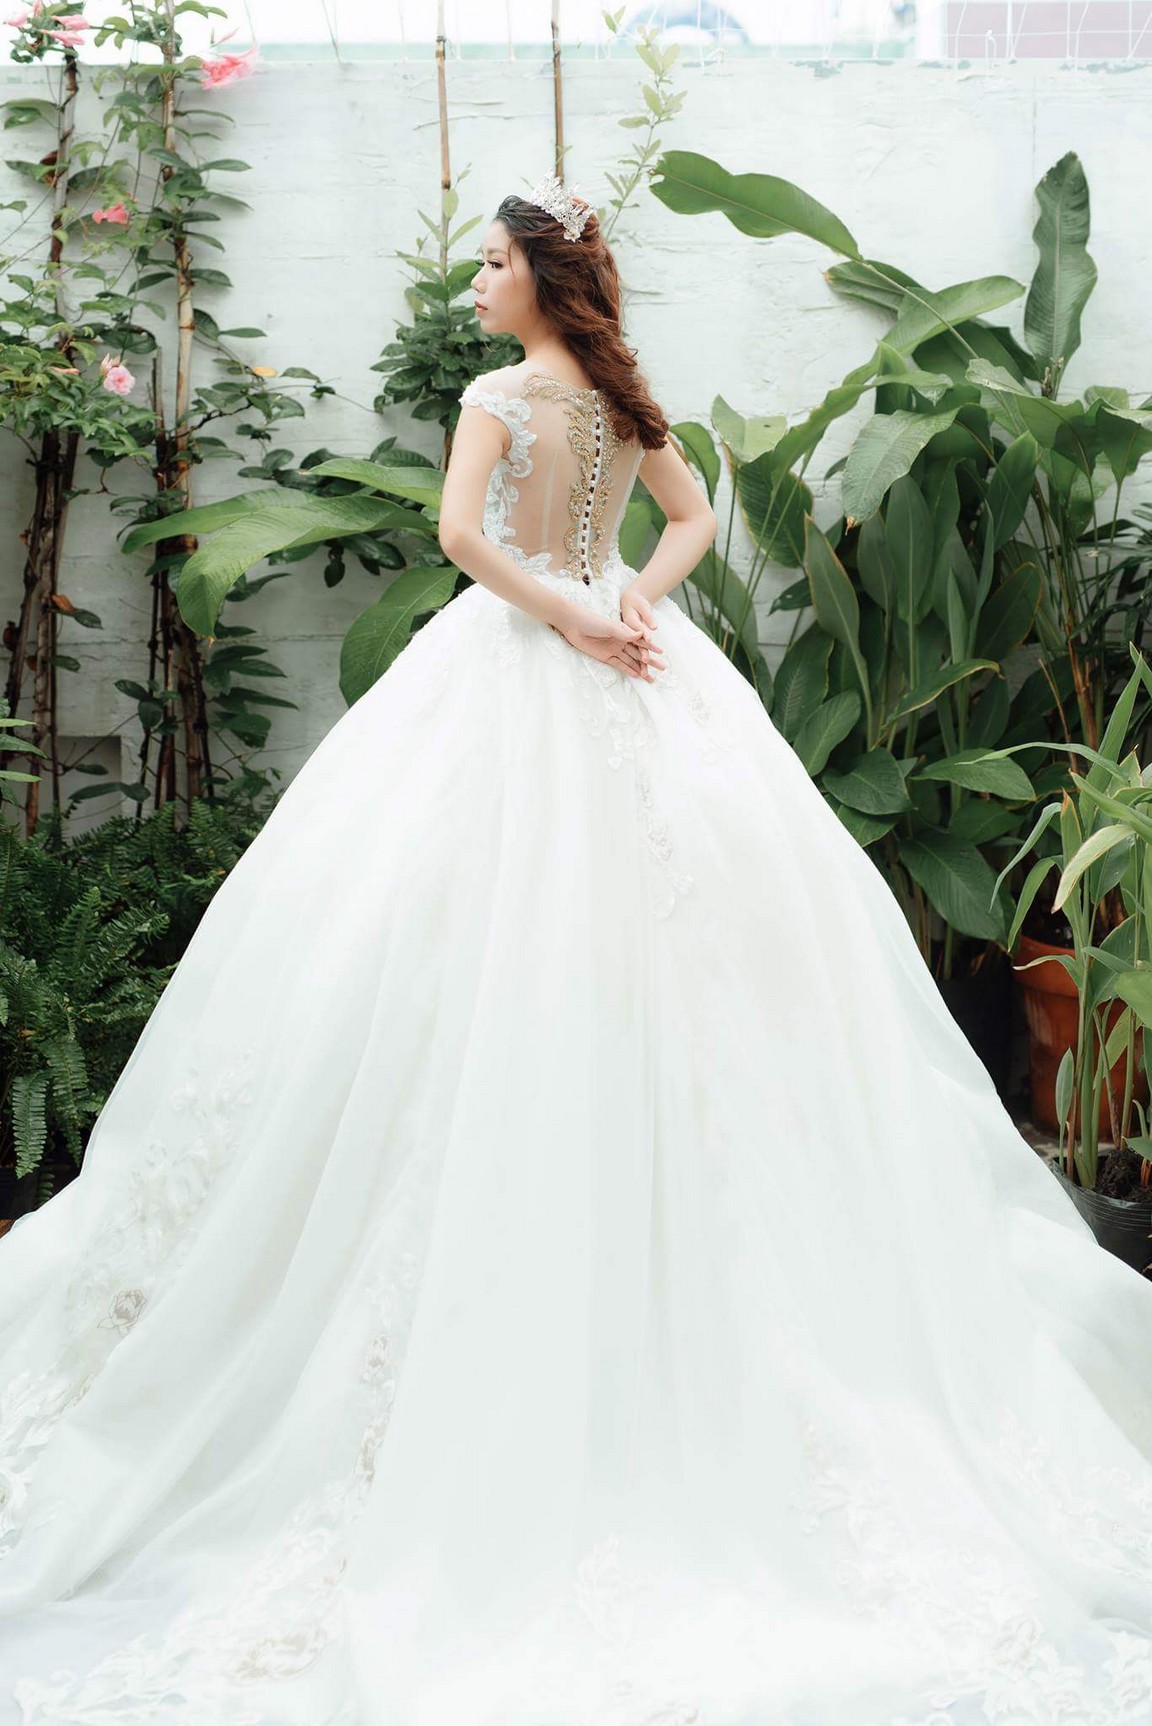 Mẫu váy cưới hở lưng đẹp quyến rũ nhất cho mùa cưới 2020